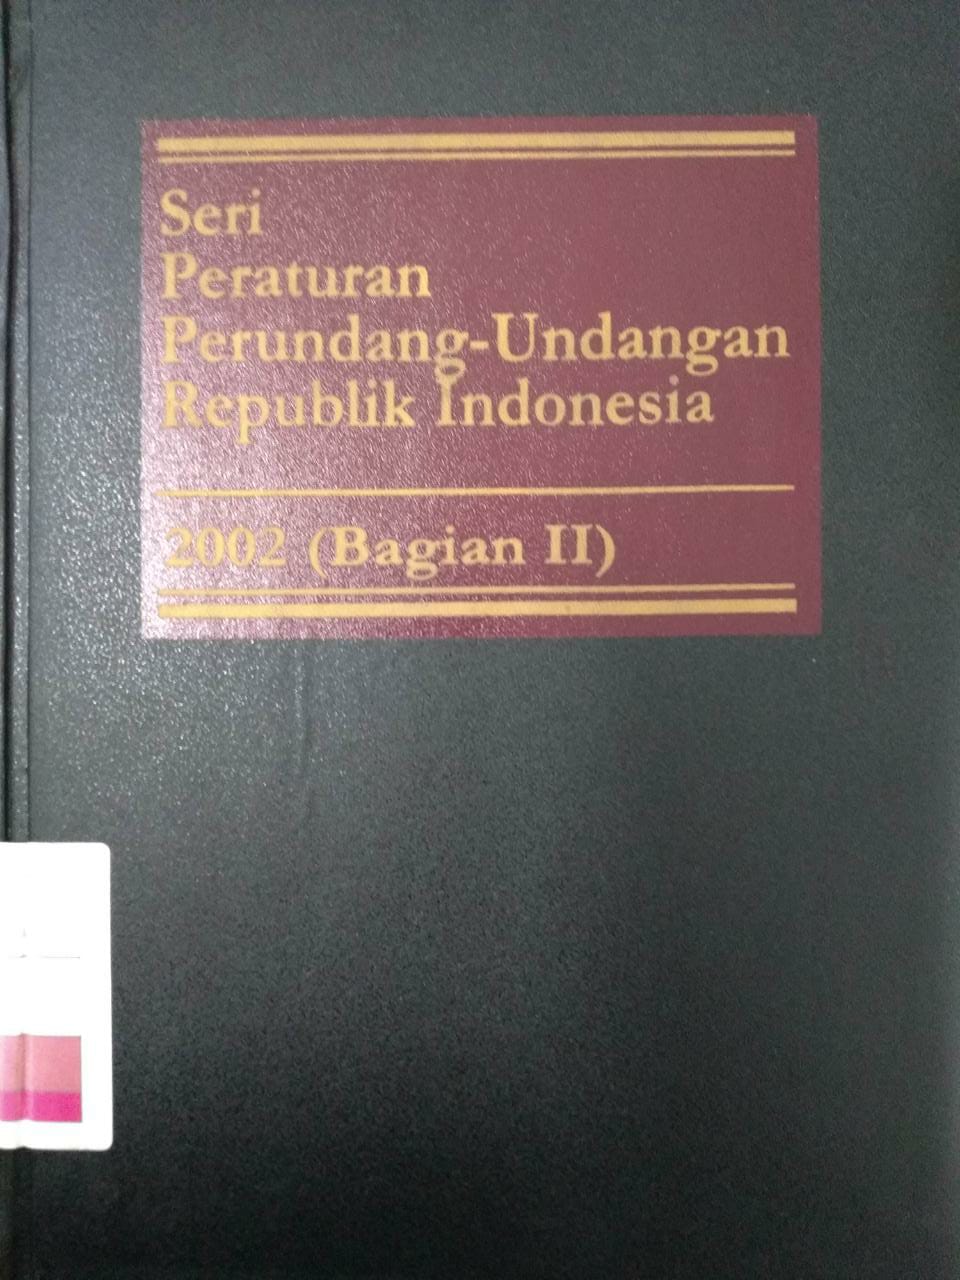 Seri Peraturan Perundang-undangan Republik Indonesia 2005 (Bagian III)